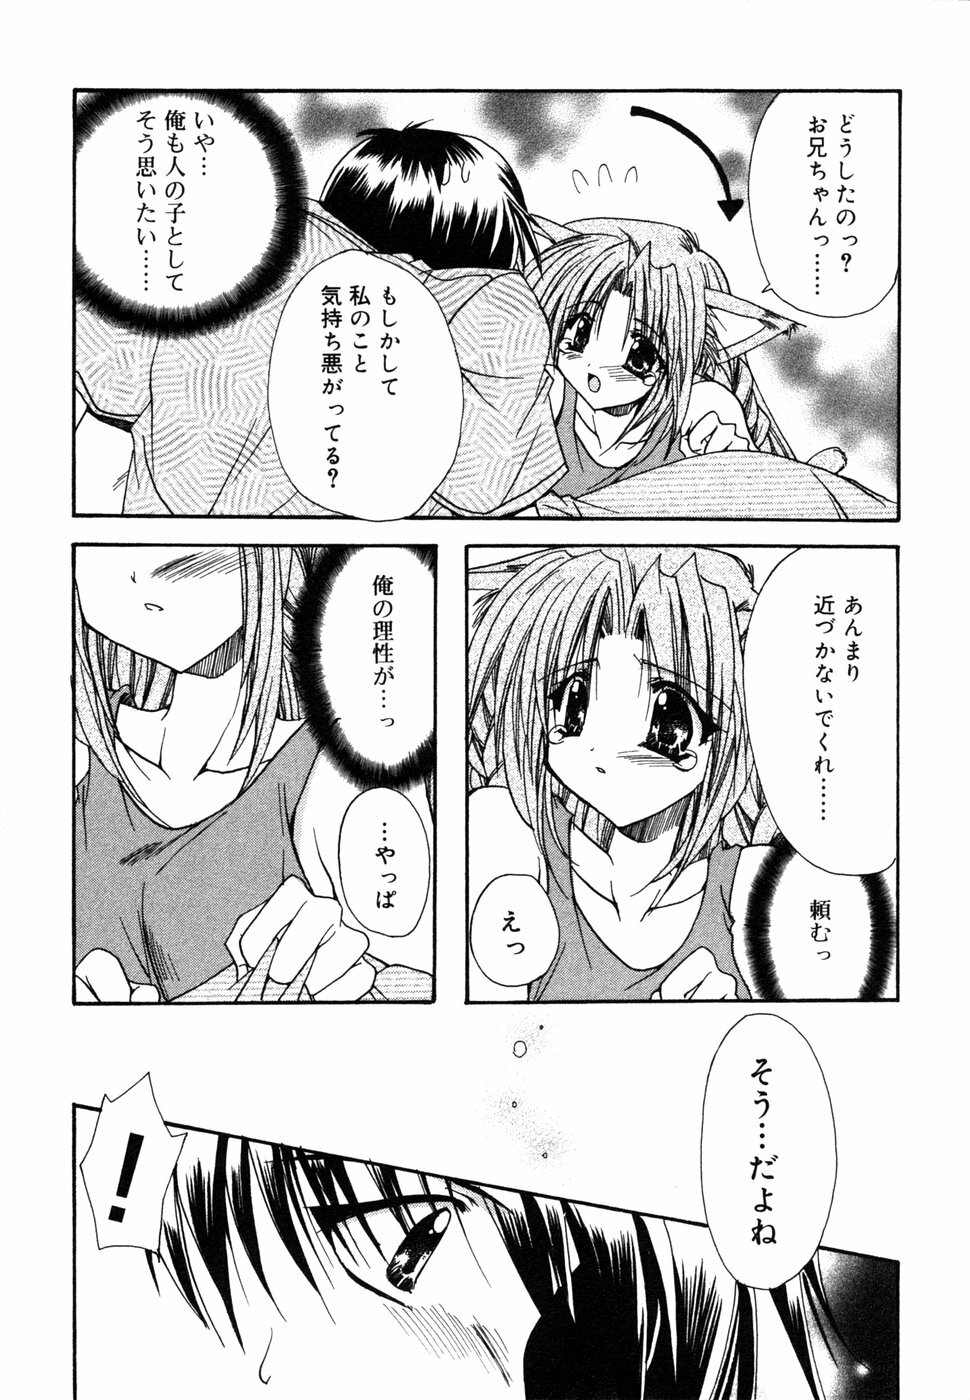 [Anthology] Himitsu no Tobira 5 Kinshin Ai Anthology (The Secret Door) page 42 full